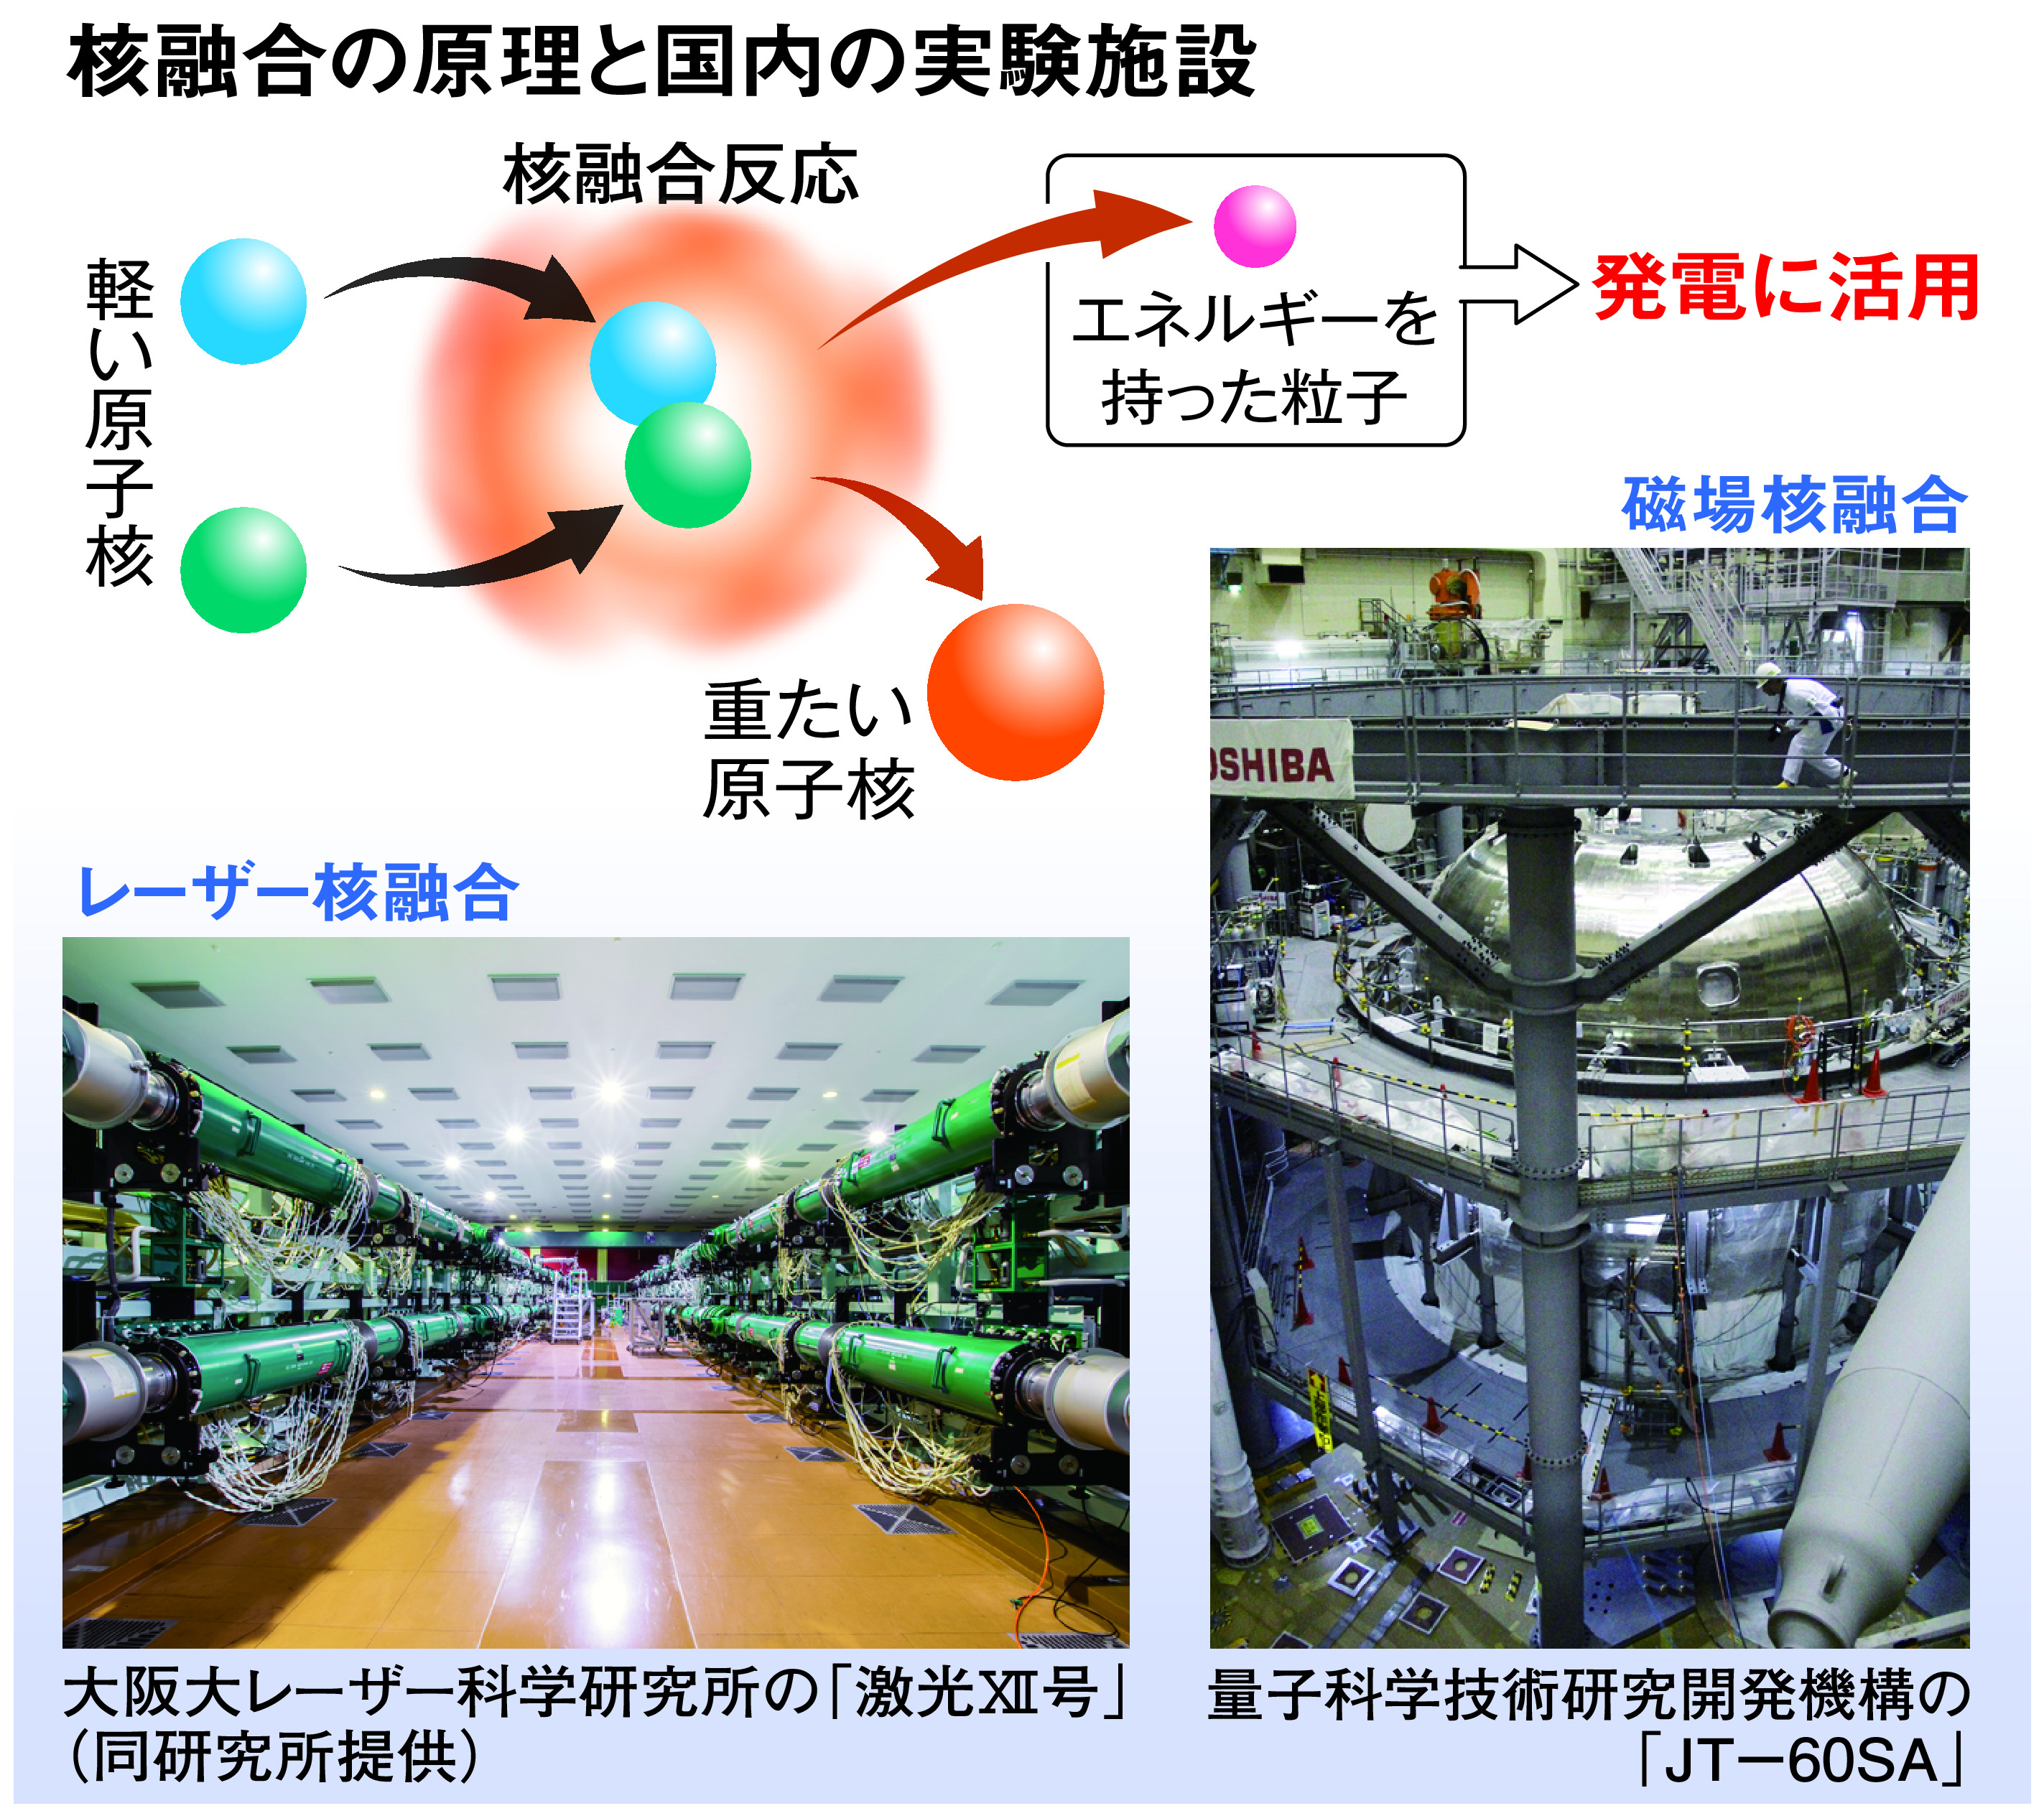 核融合エネルギー、実用化に前進 研究加速も日本には「軍事」の